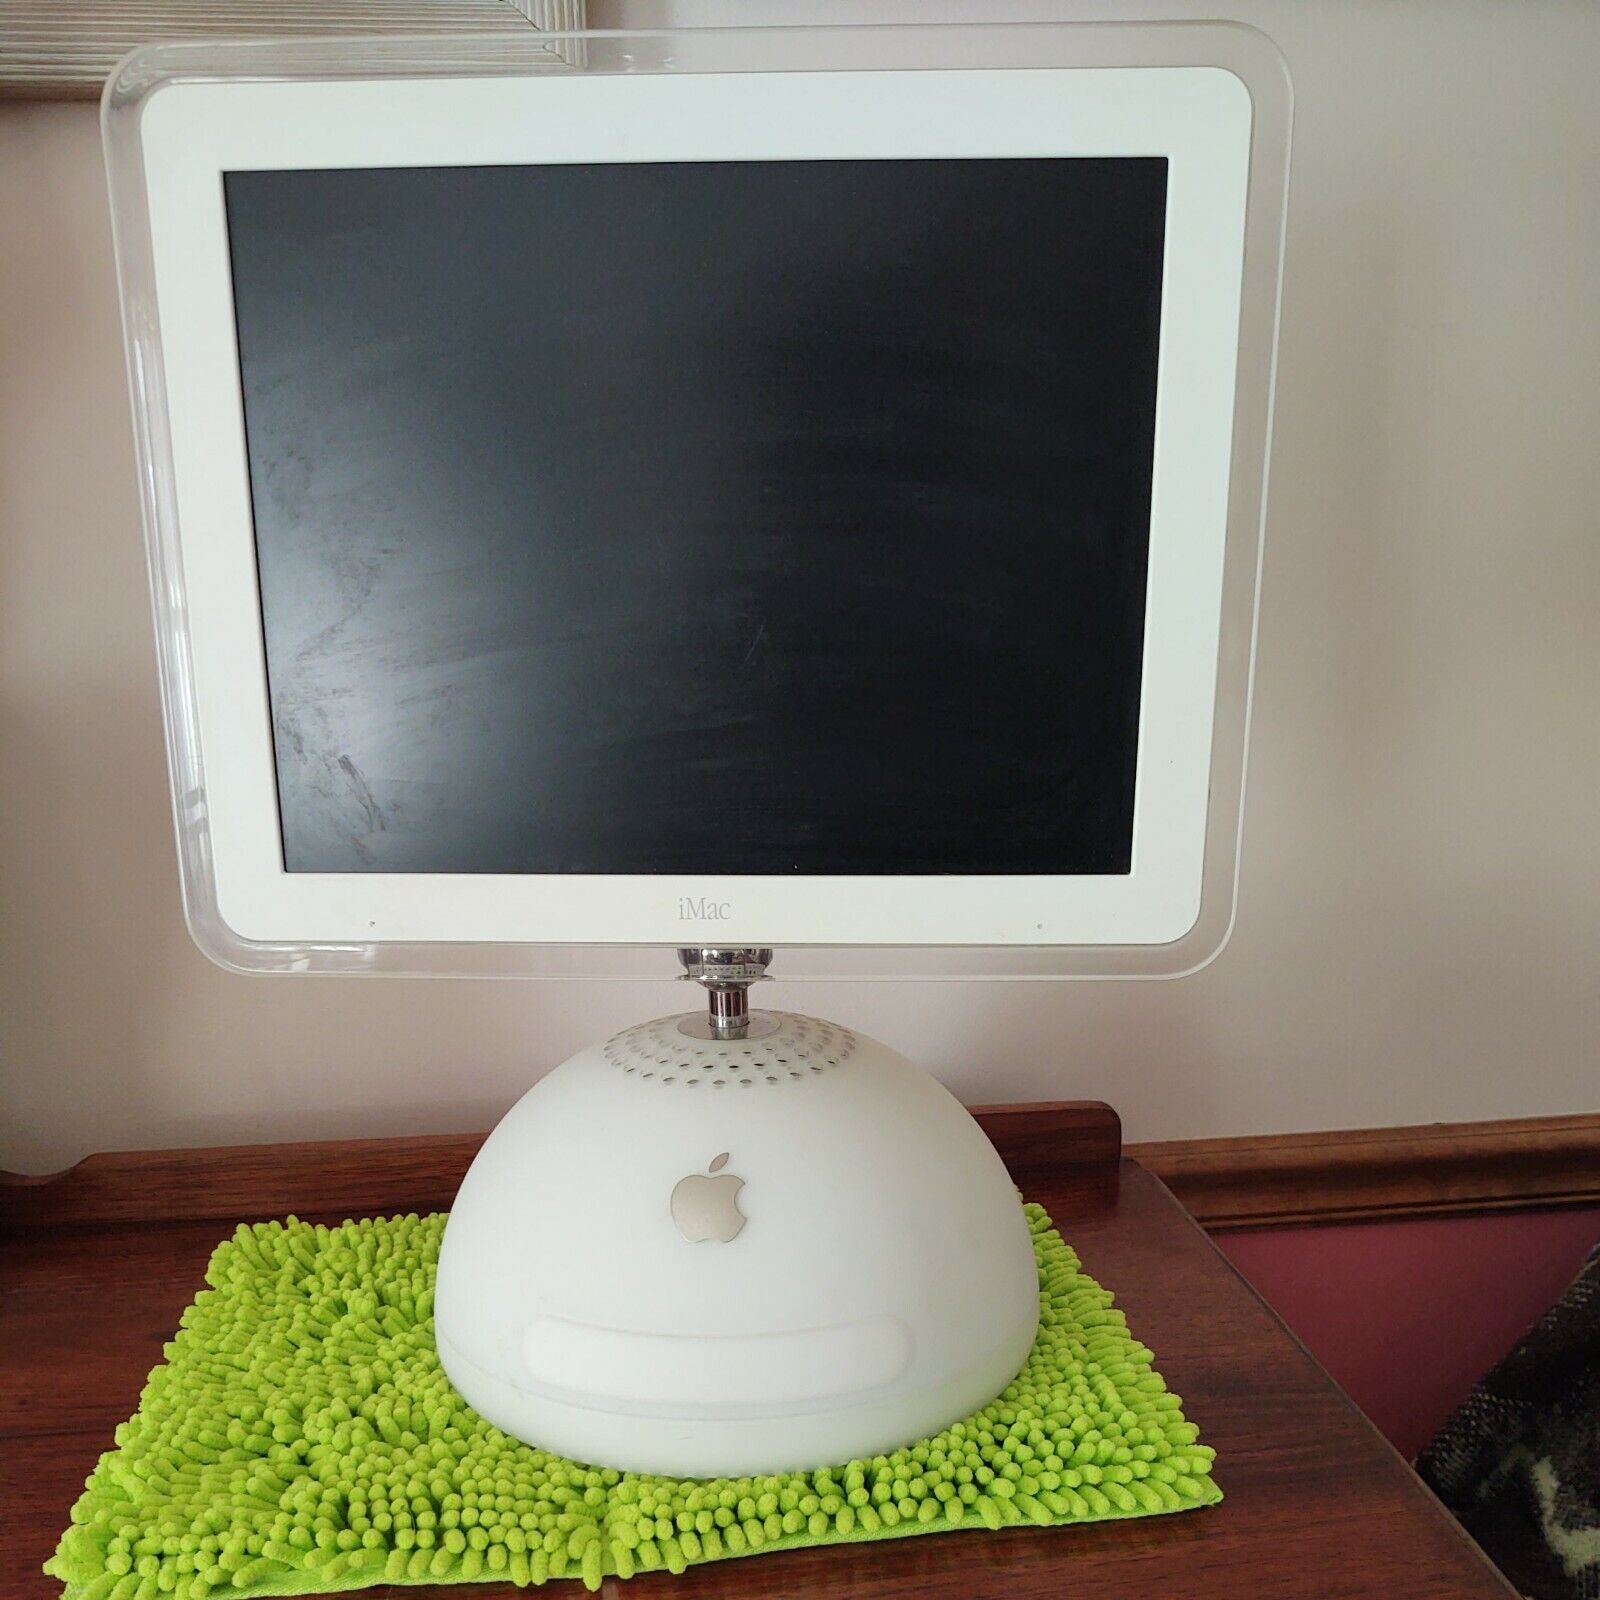 Vintage iMac Apple Computer, 2002 